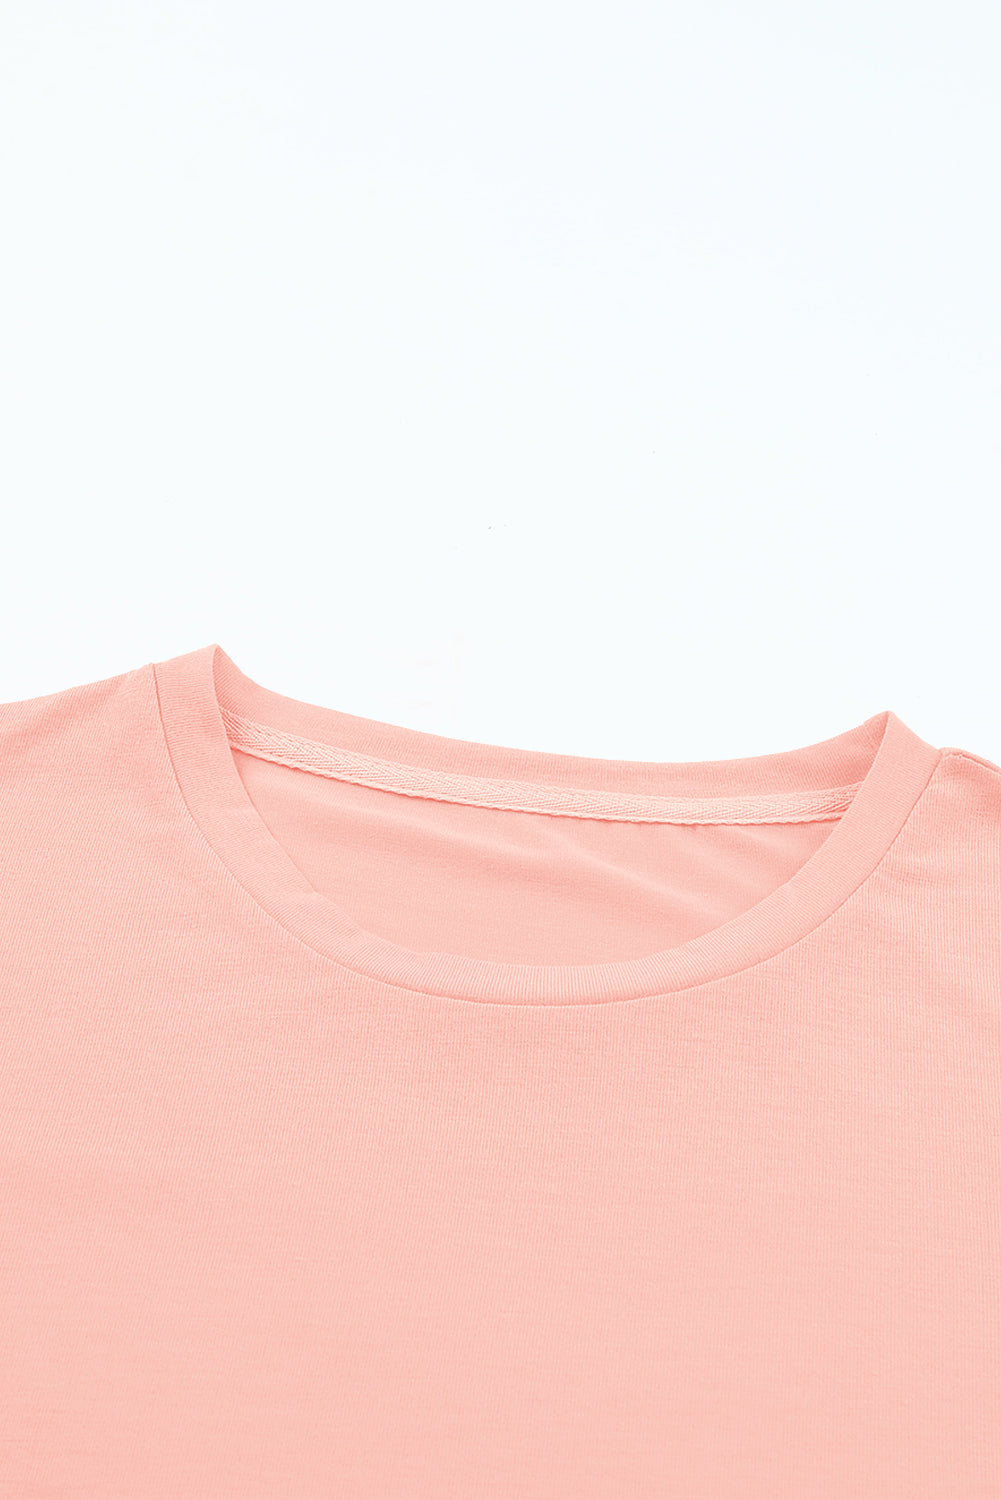 Rožnato rdeča navadna majica z okroglim izrezom za prosti čas